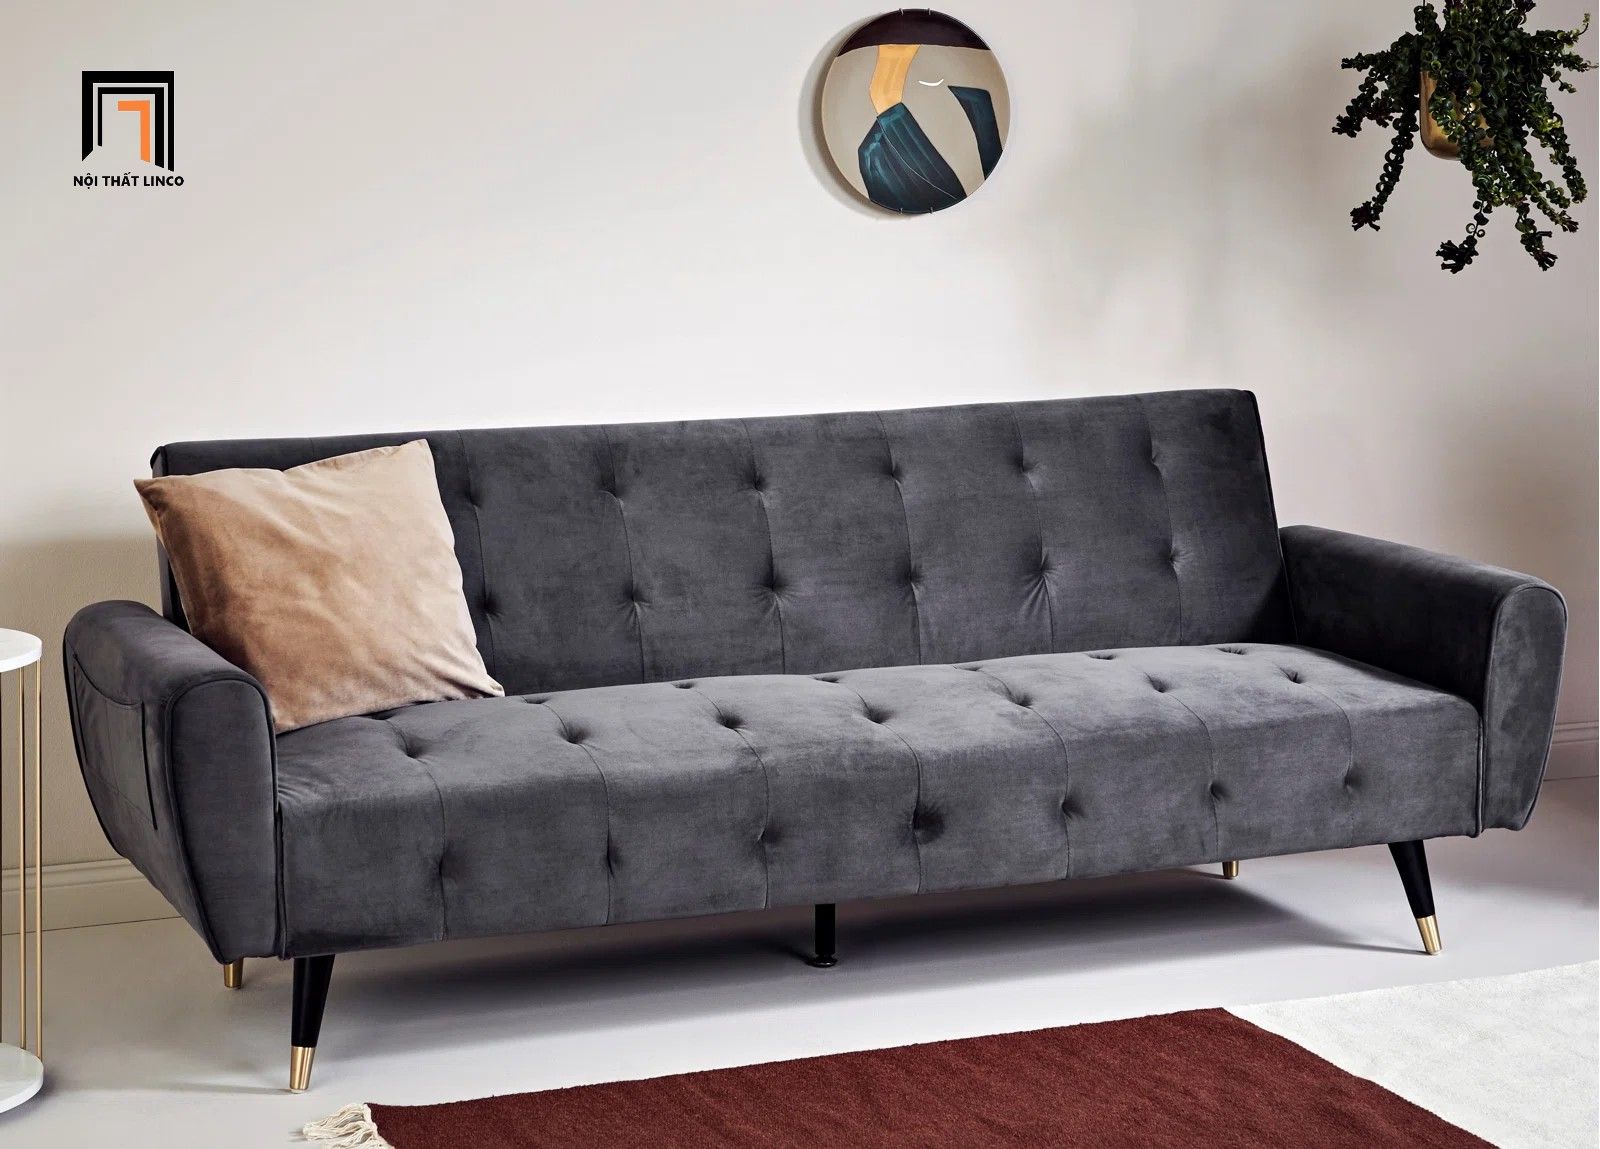  Ghế sofa băng giường GB22 Platin 2m vải nhung xám đen 